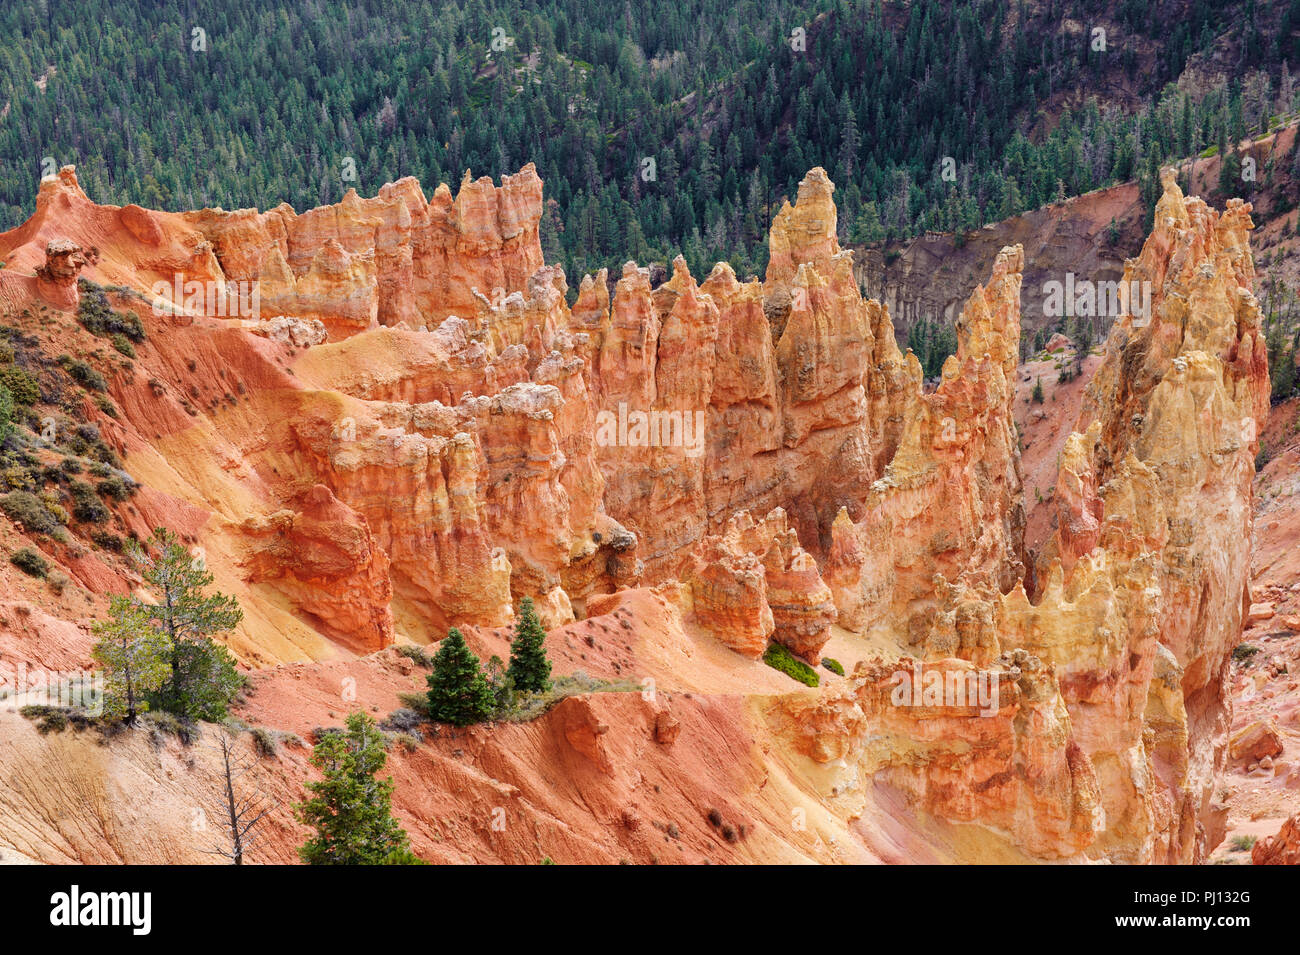 Cautivante paisaje mineral de naranja y rojo, chimeneas de hadas o hoodoos, en Bryce Canyon National Park, Utah, EE.UU., Foto de stock